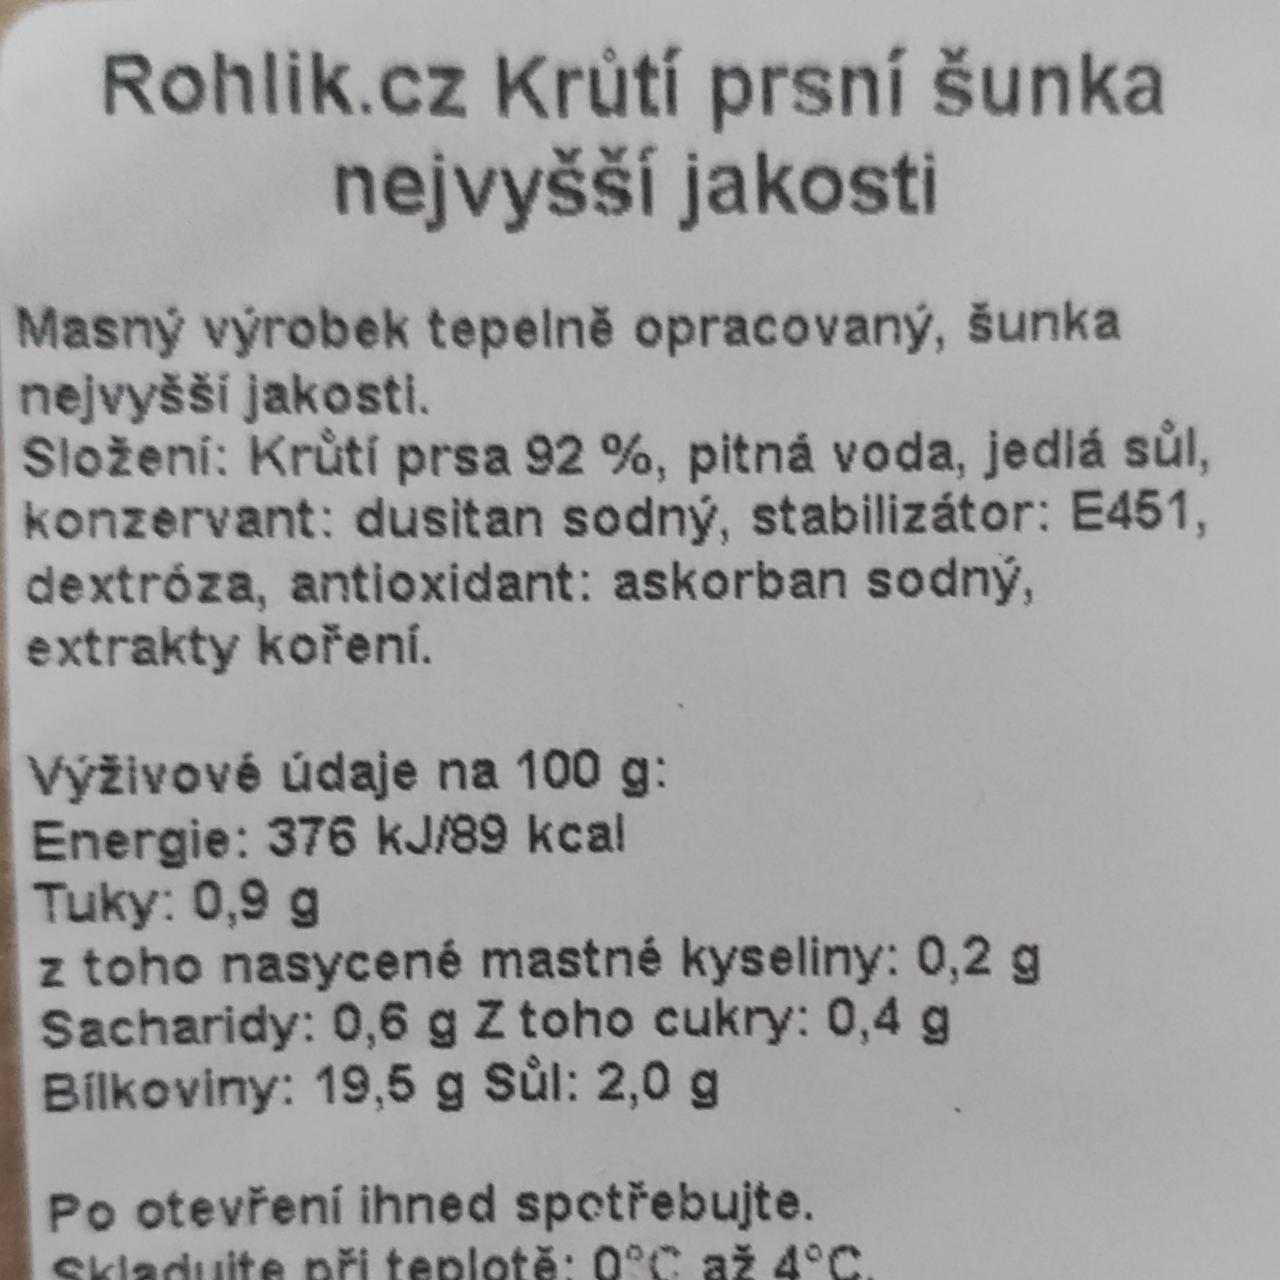 Fotografie - Krůtí prsní šunka nejvyšší jakosti Rohlik.cz